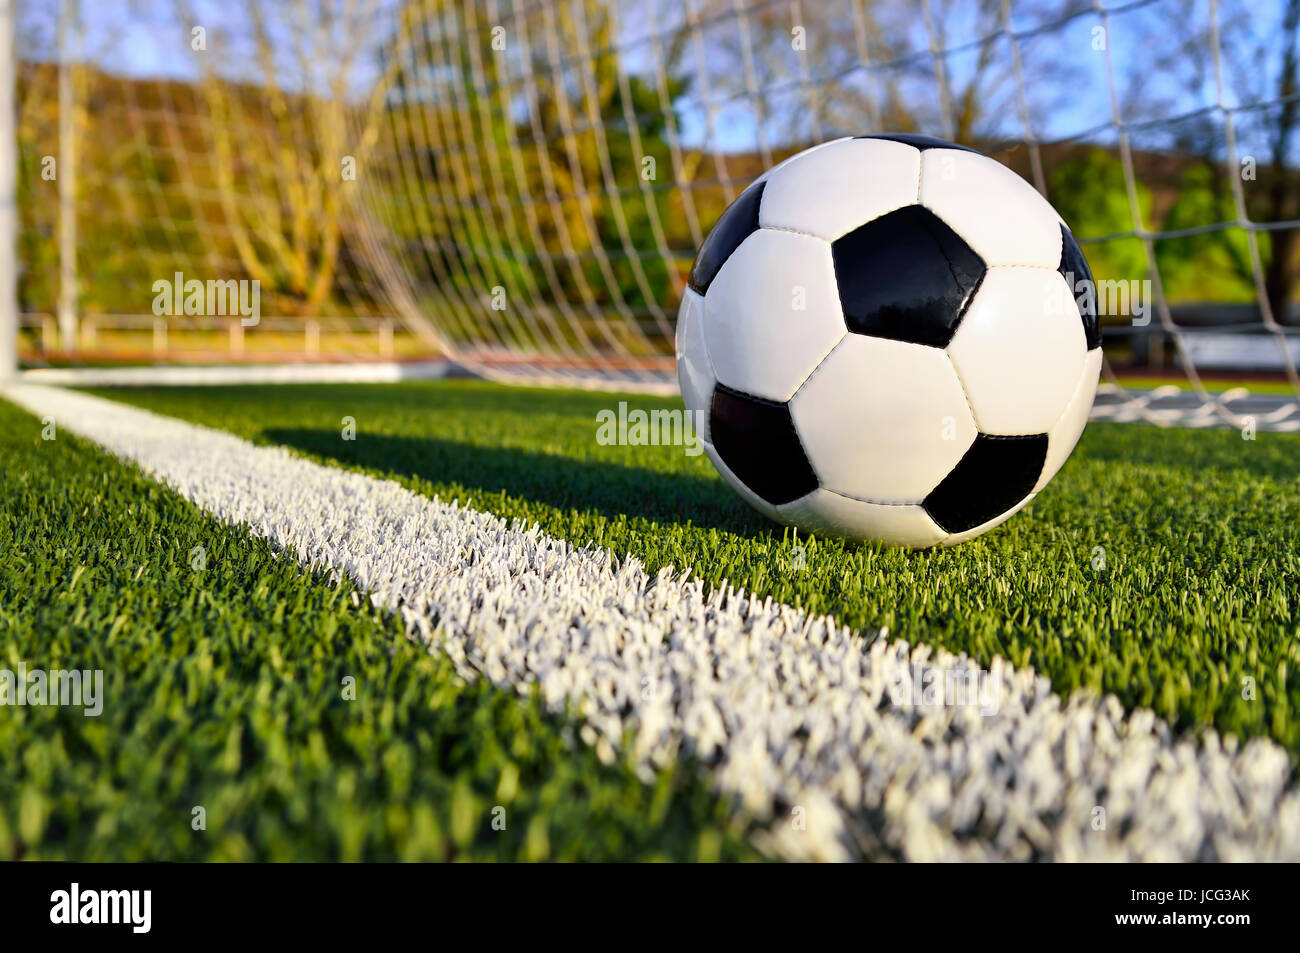 Fußball liegt auf einem sonnigen Fußballplatz hinter der Torlinie Foto Stock